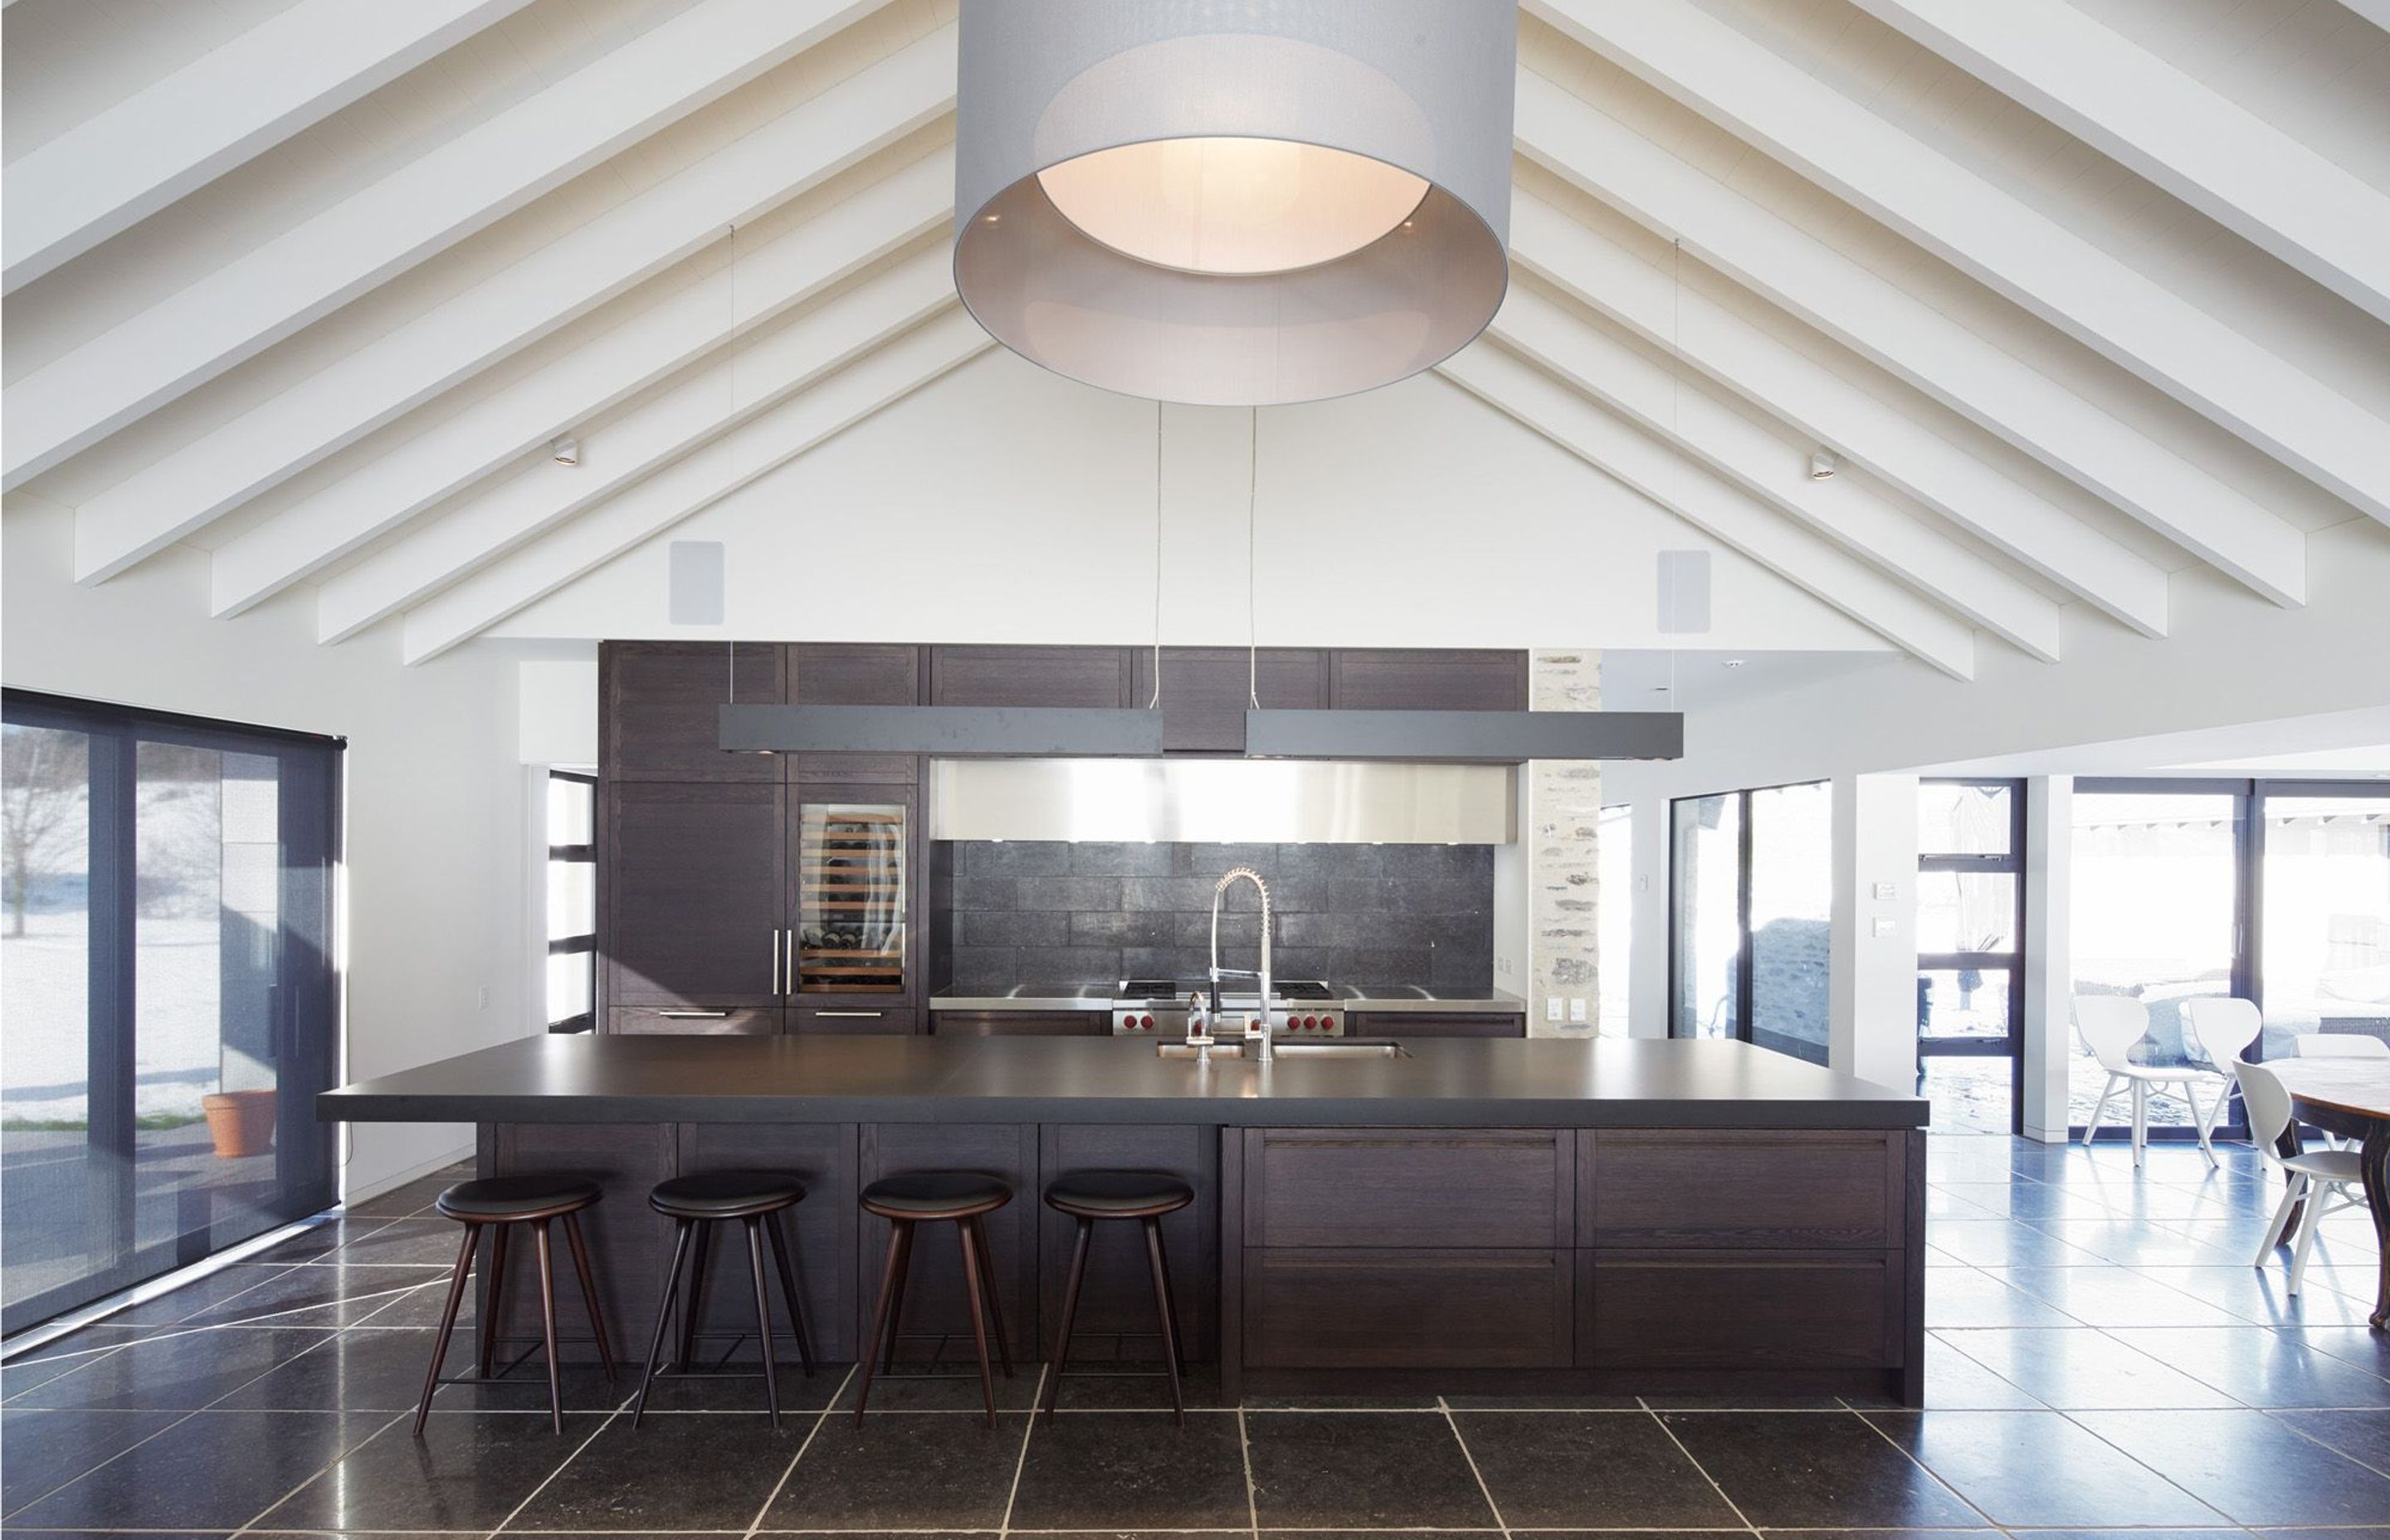 Award winning kitchen by Ingrid Geldof Design